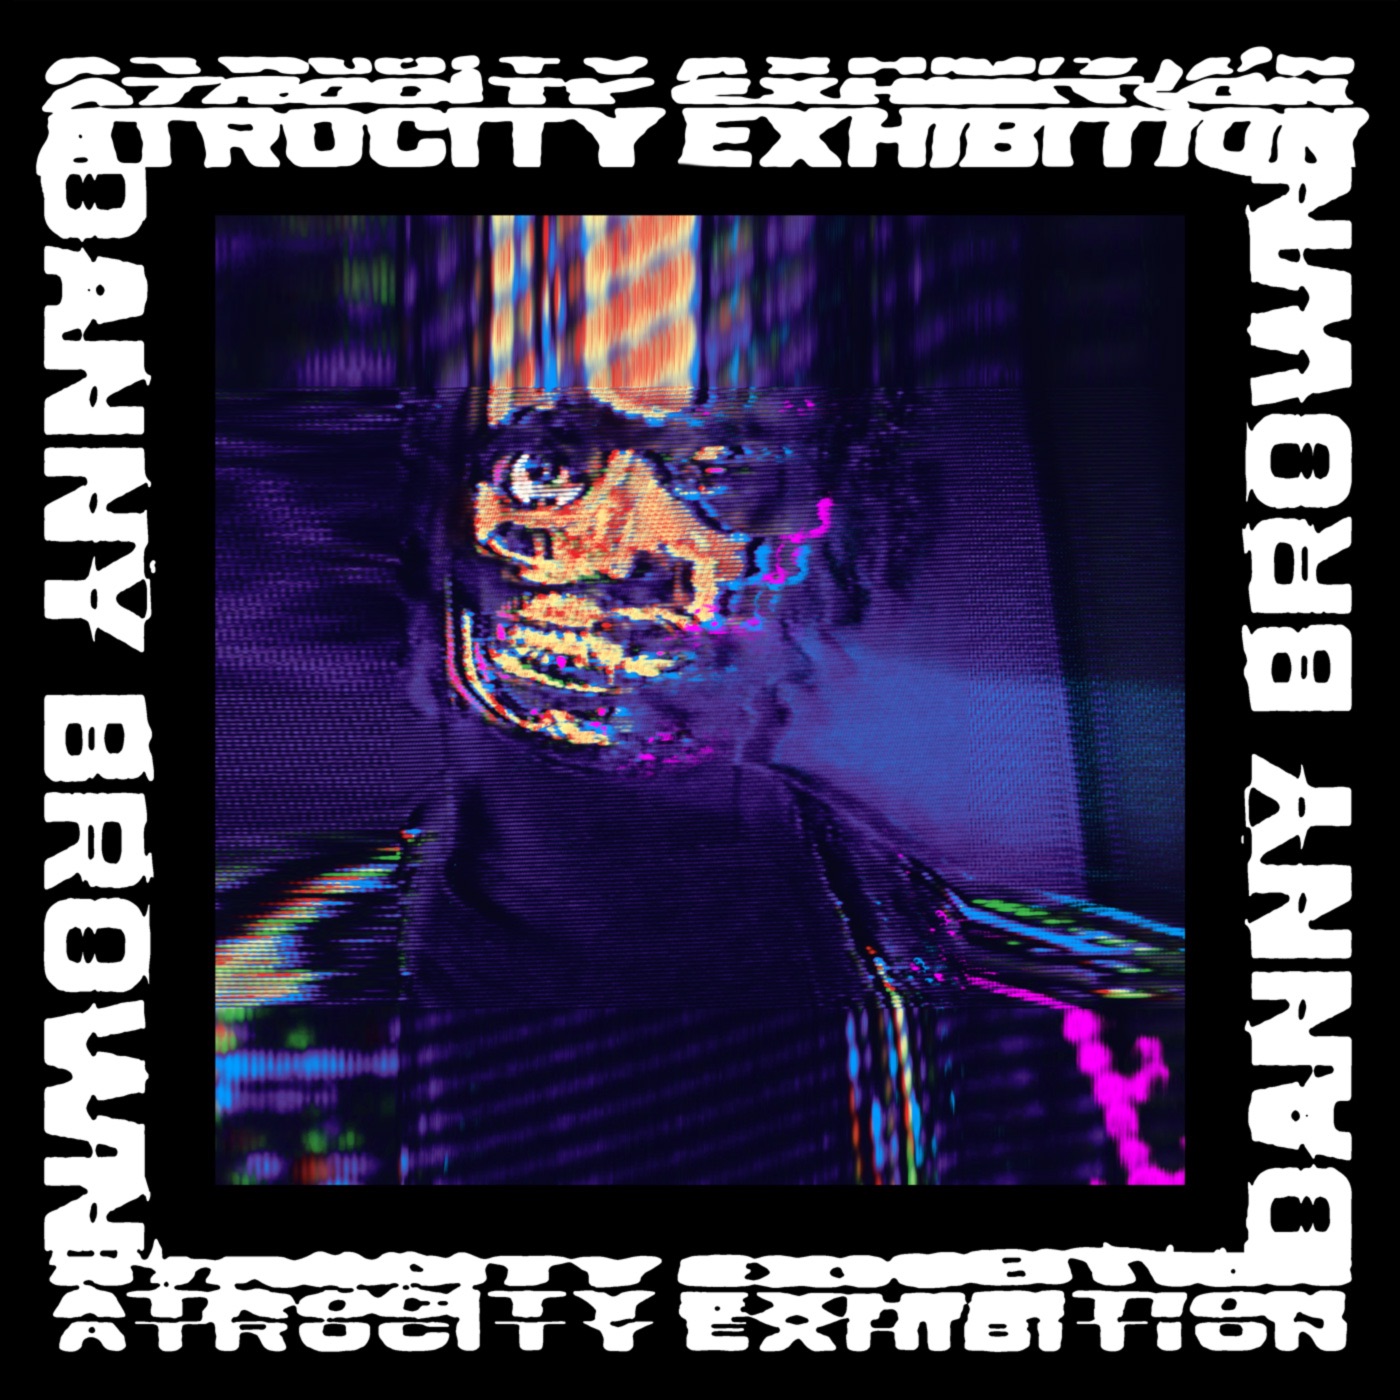 Atrocity Exhibition by Danny Brown